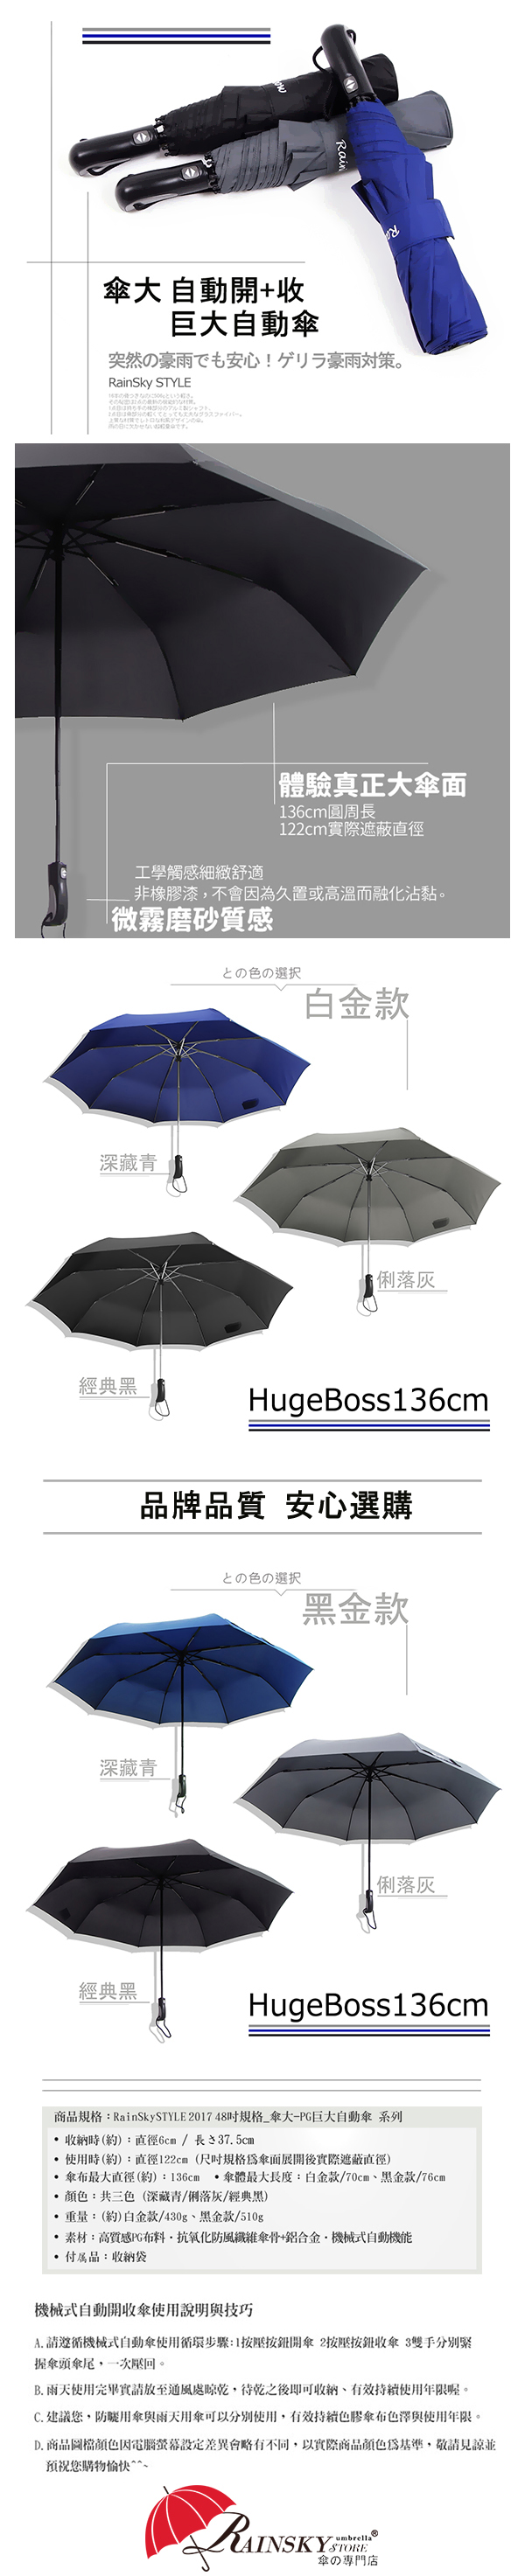 【買一送一】136cm-三人自動傘 /高質感PG布料- 傘 雨傘 自動傘 折疊傘 遮陽傘 大傘 抗UV 防風 撥水 1